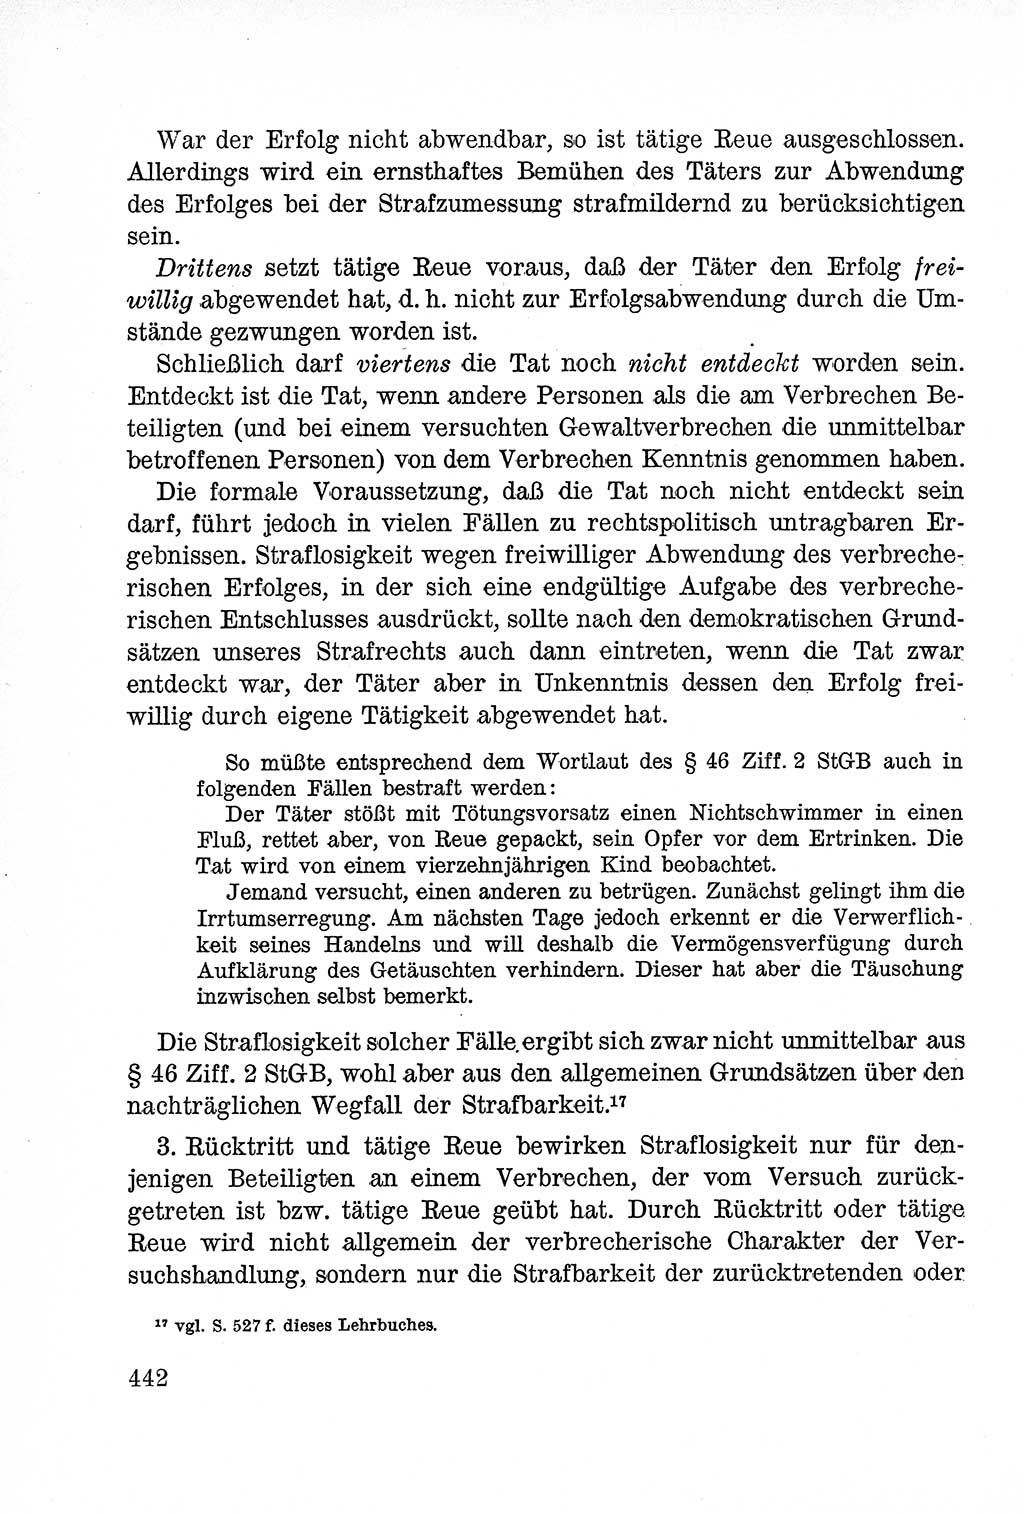 Lehrbuch des Strafrechts der Deutschen Demokratischen Republik (DDR), Allgemeiner Teil 1957, Seite 442 (Lb. Strafr. DDR AT 1957, S. 442)